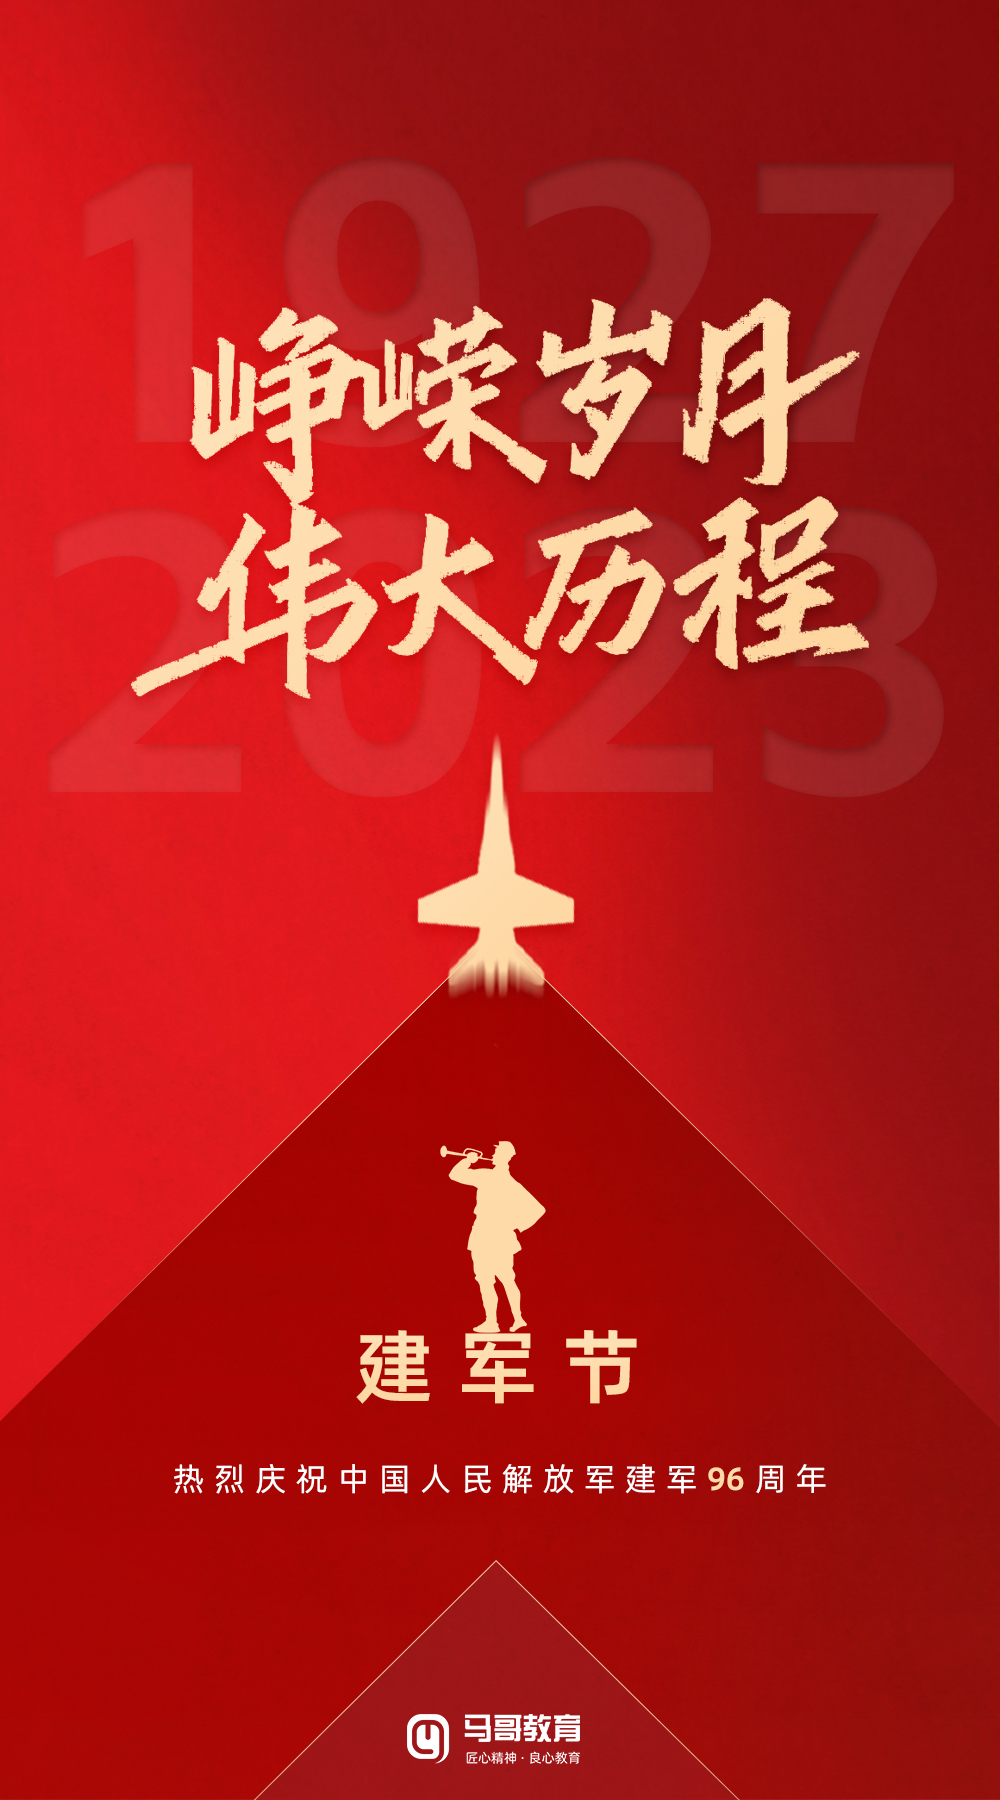 建军节| 热烈庆祝中国人民解放军建军96周年